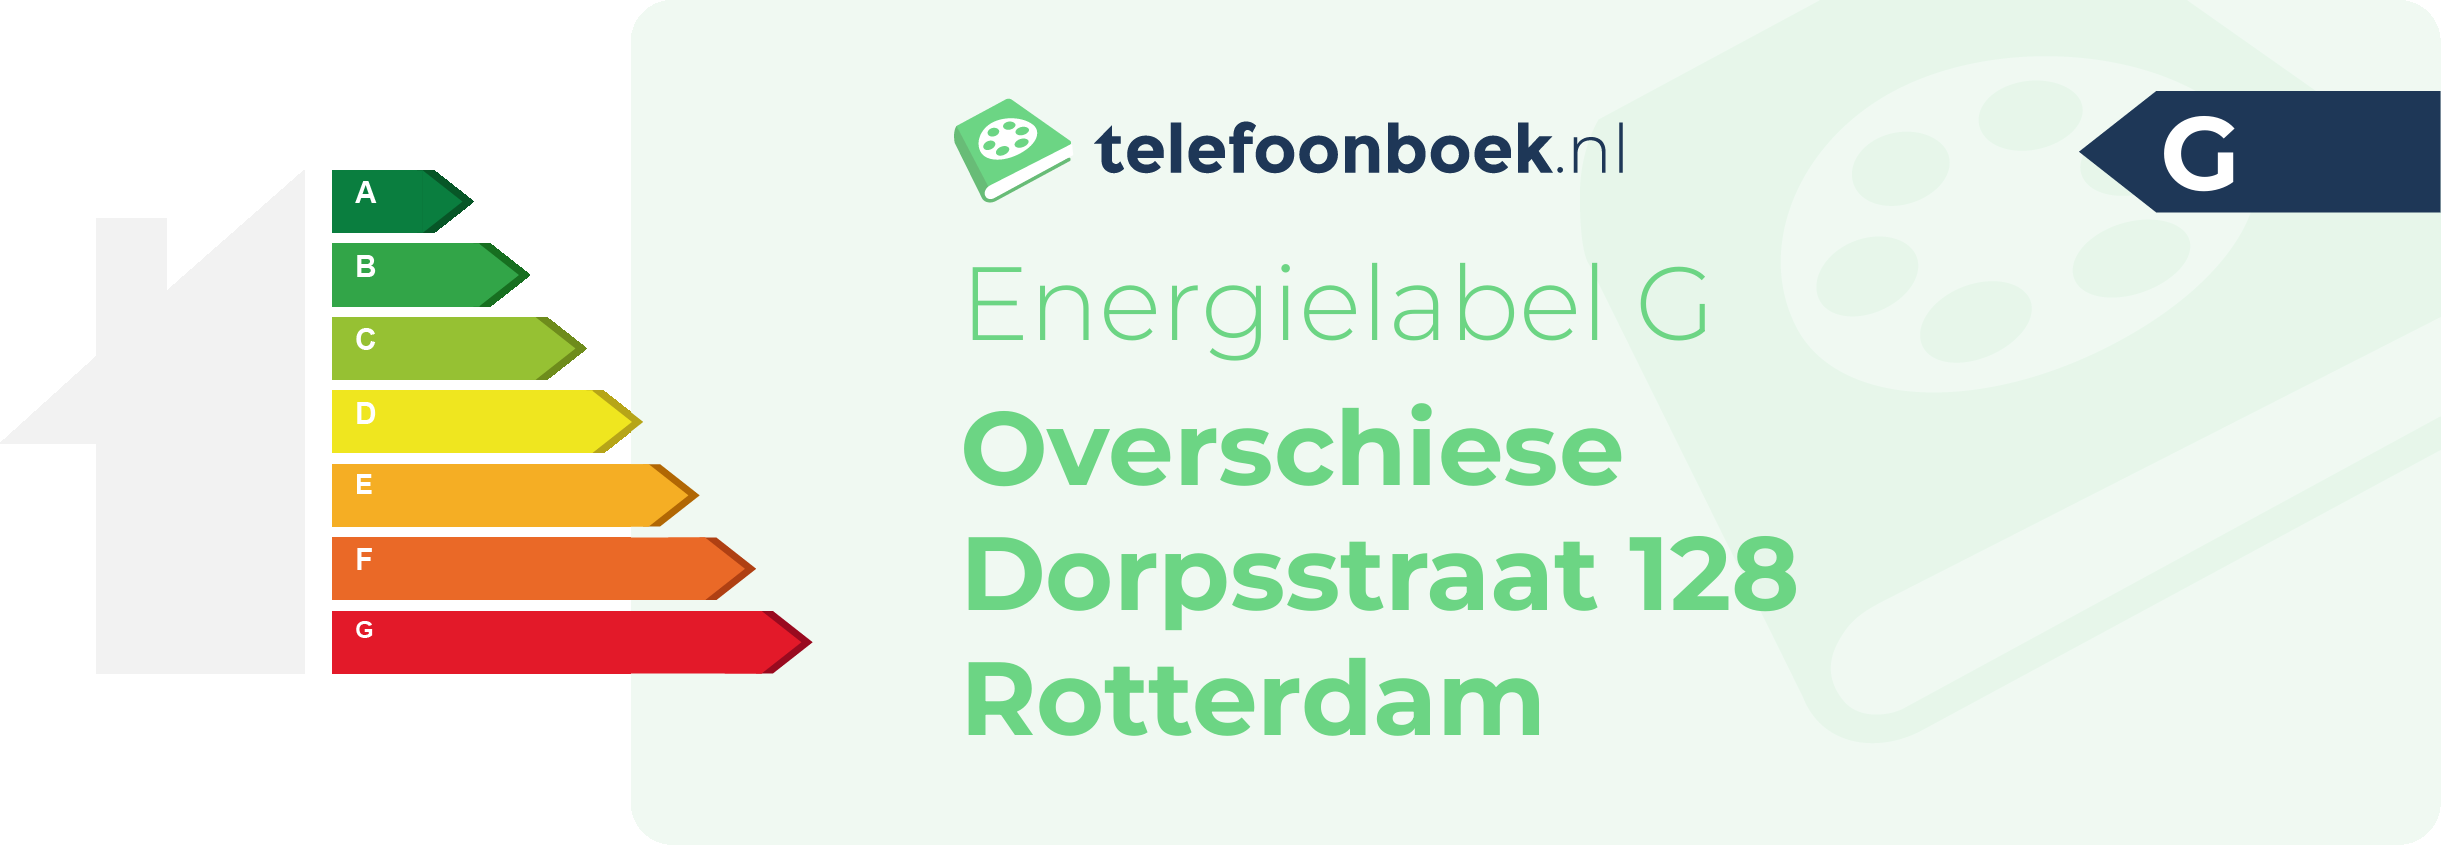 Energielabel Overschiese Dorpsstraat 128 Rotterdam